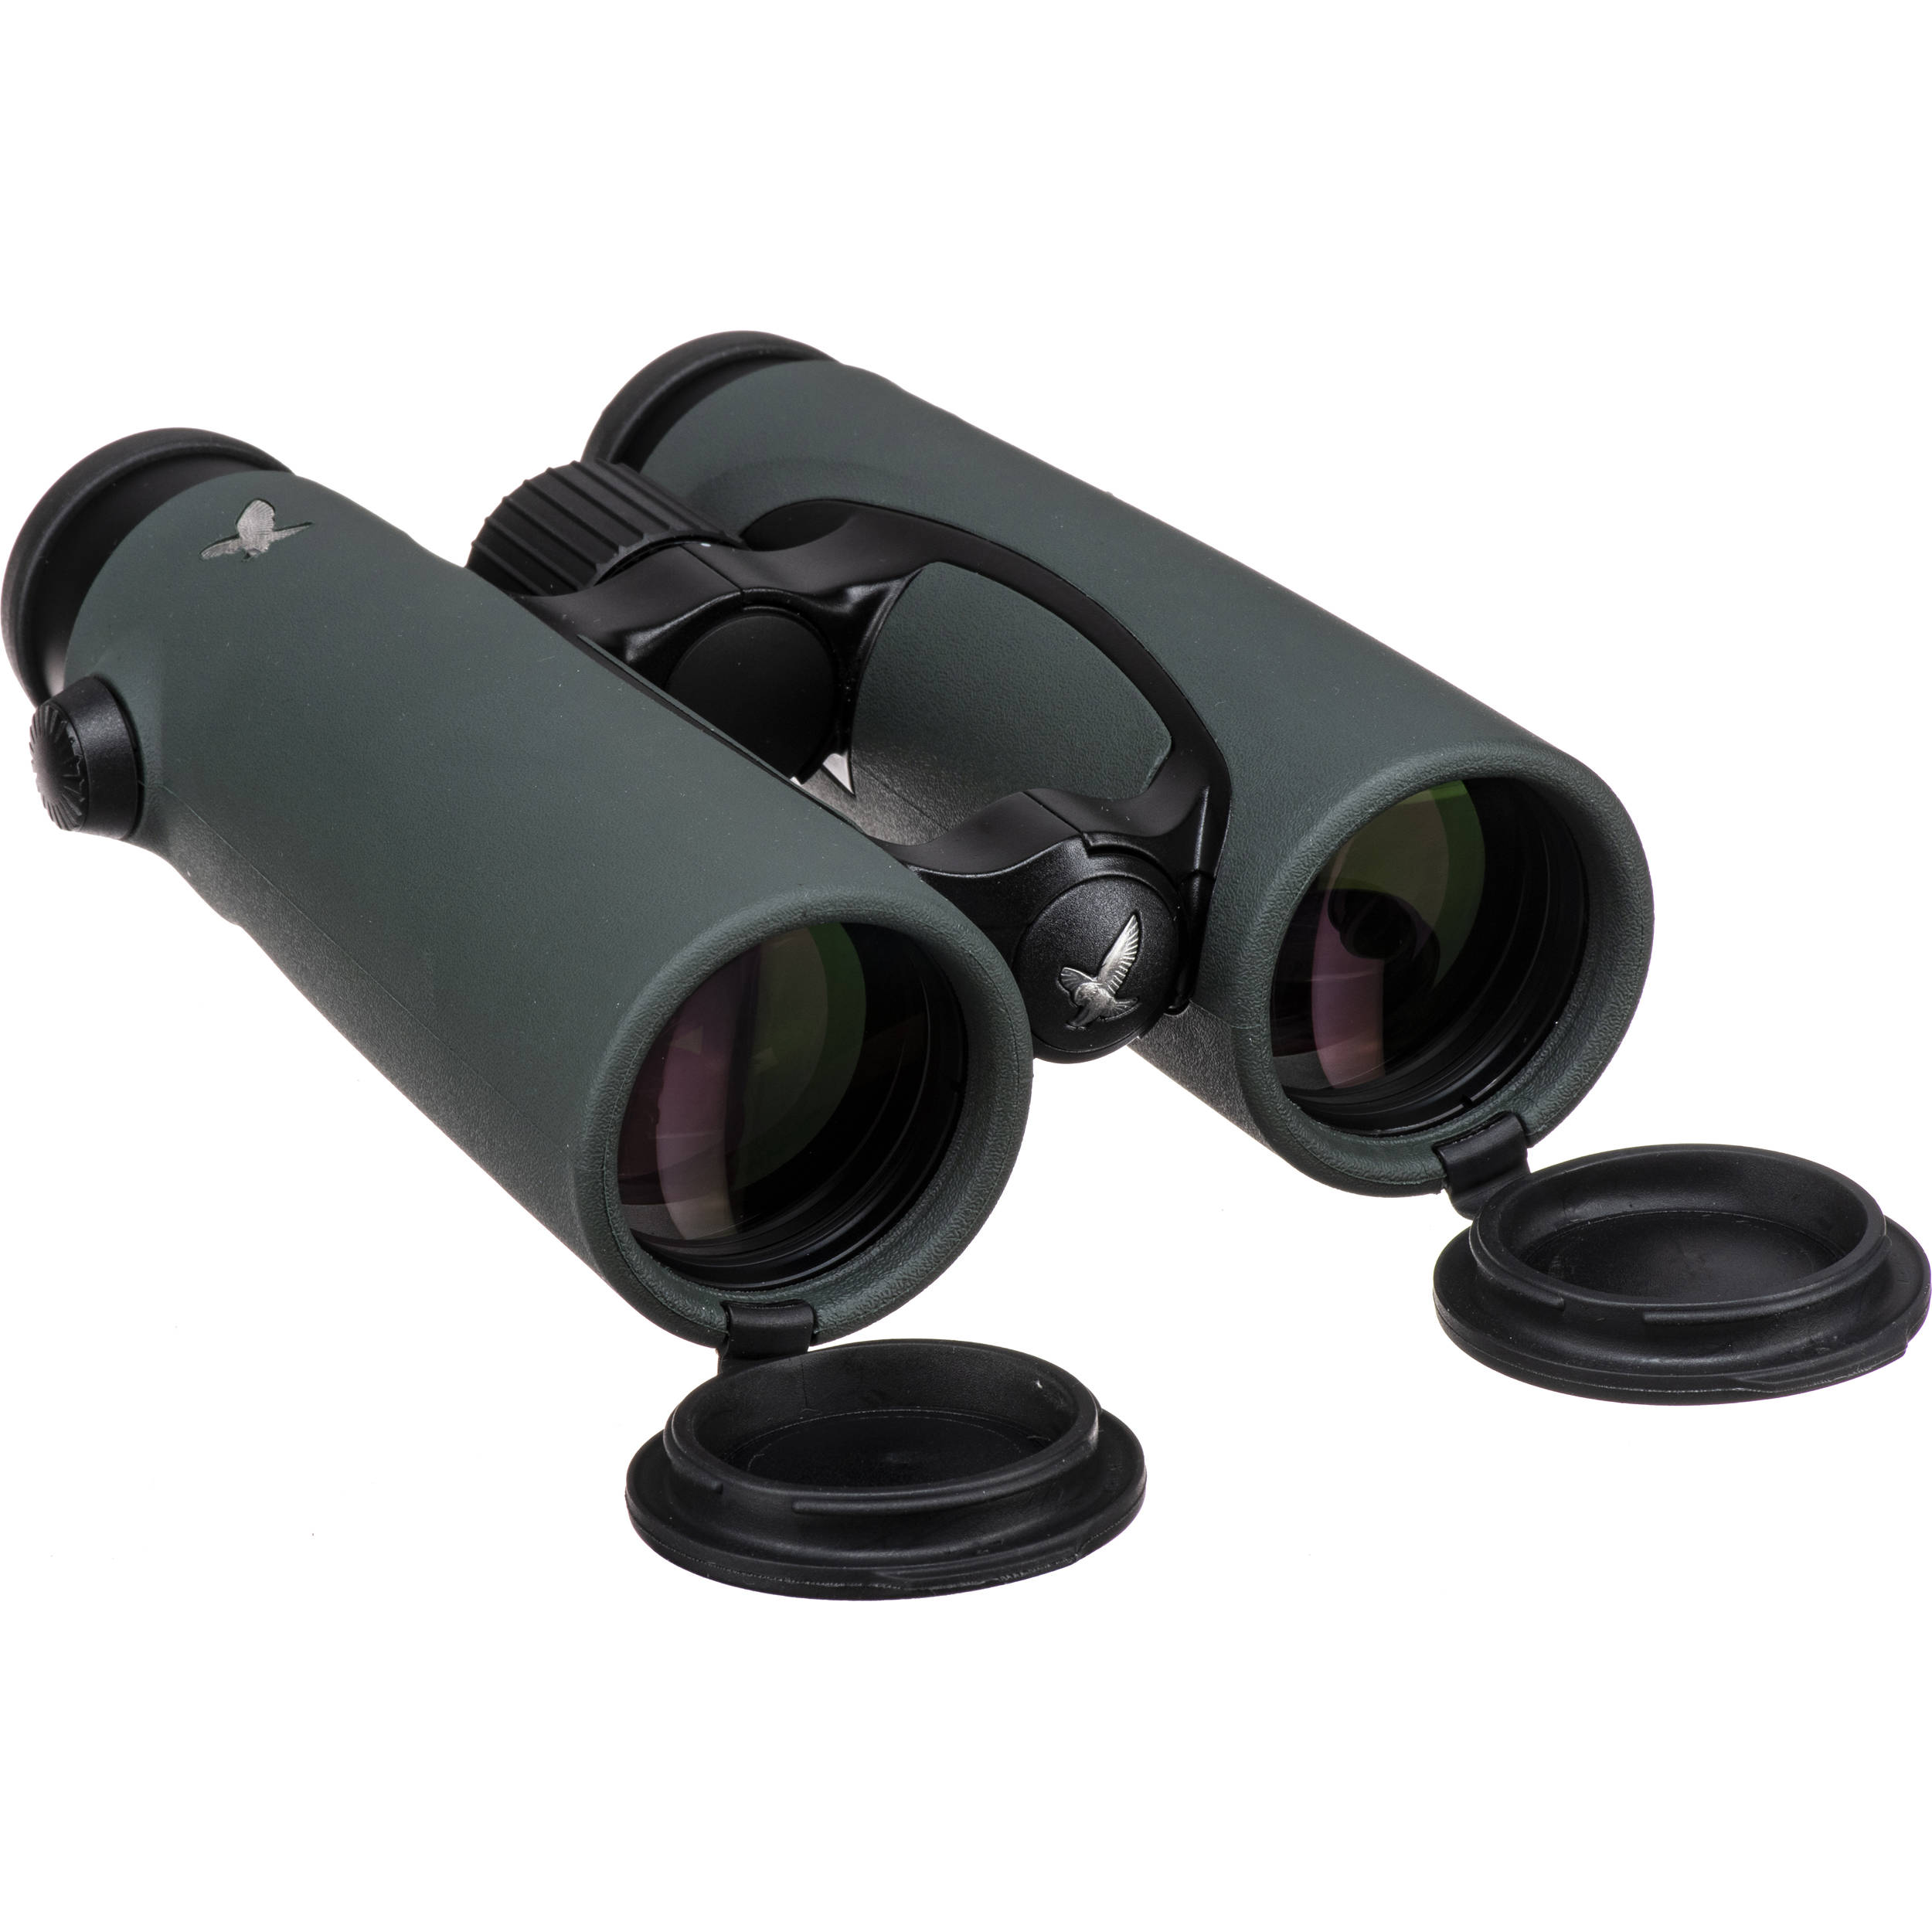 second hand binoculars swarovski